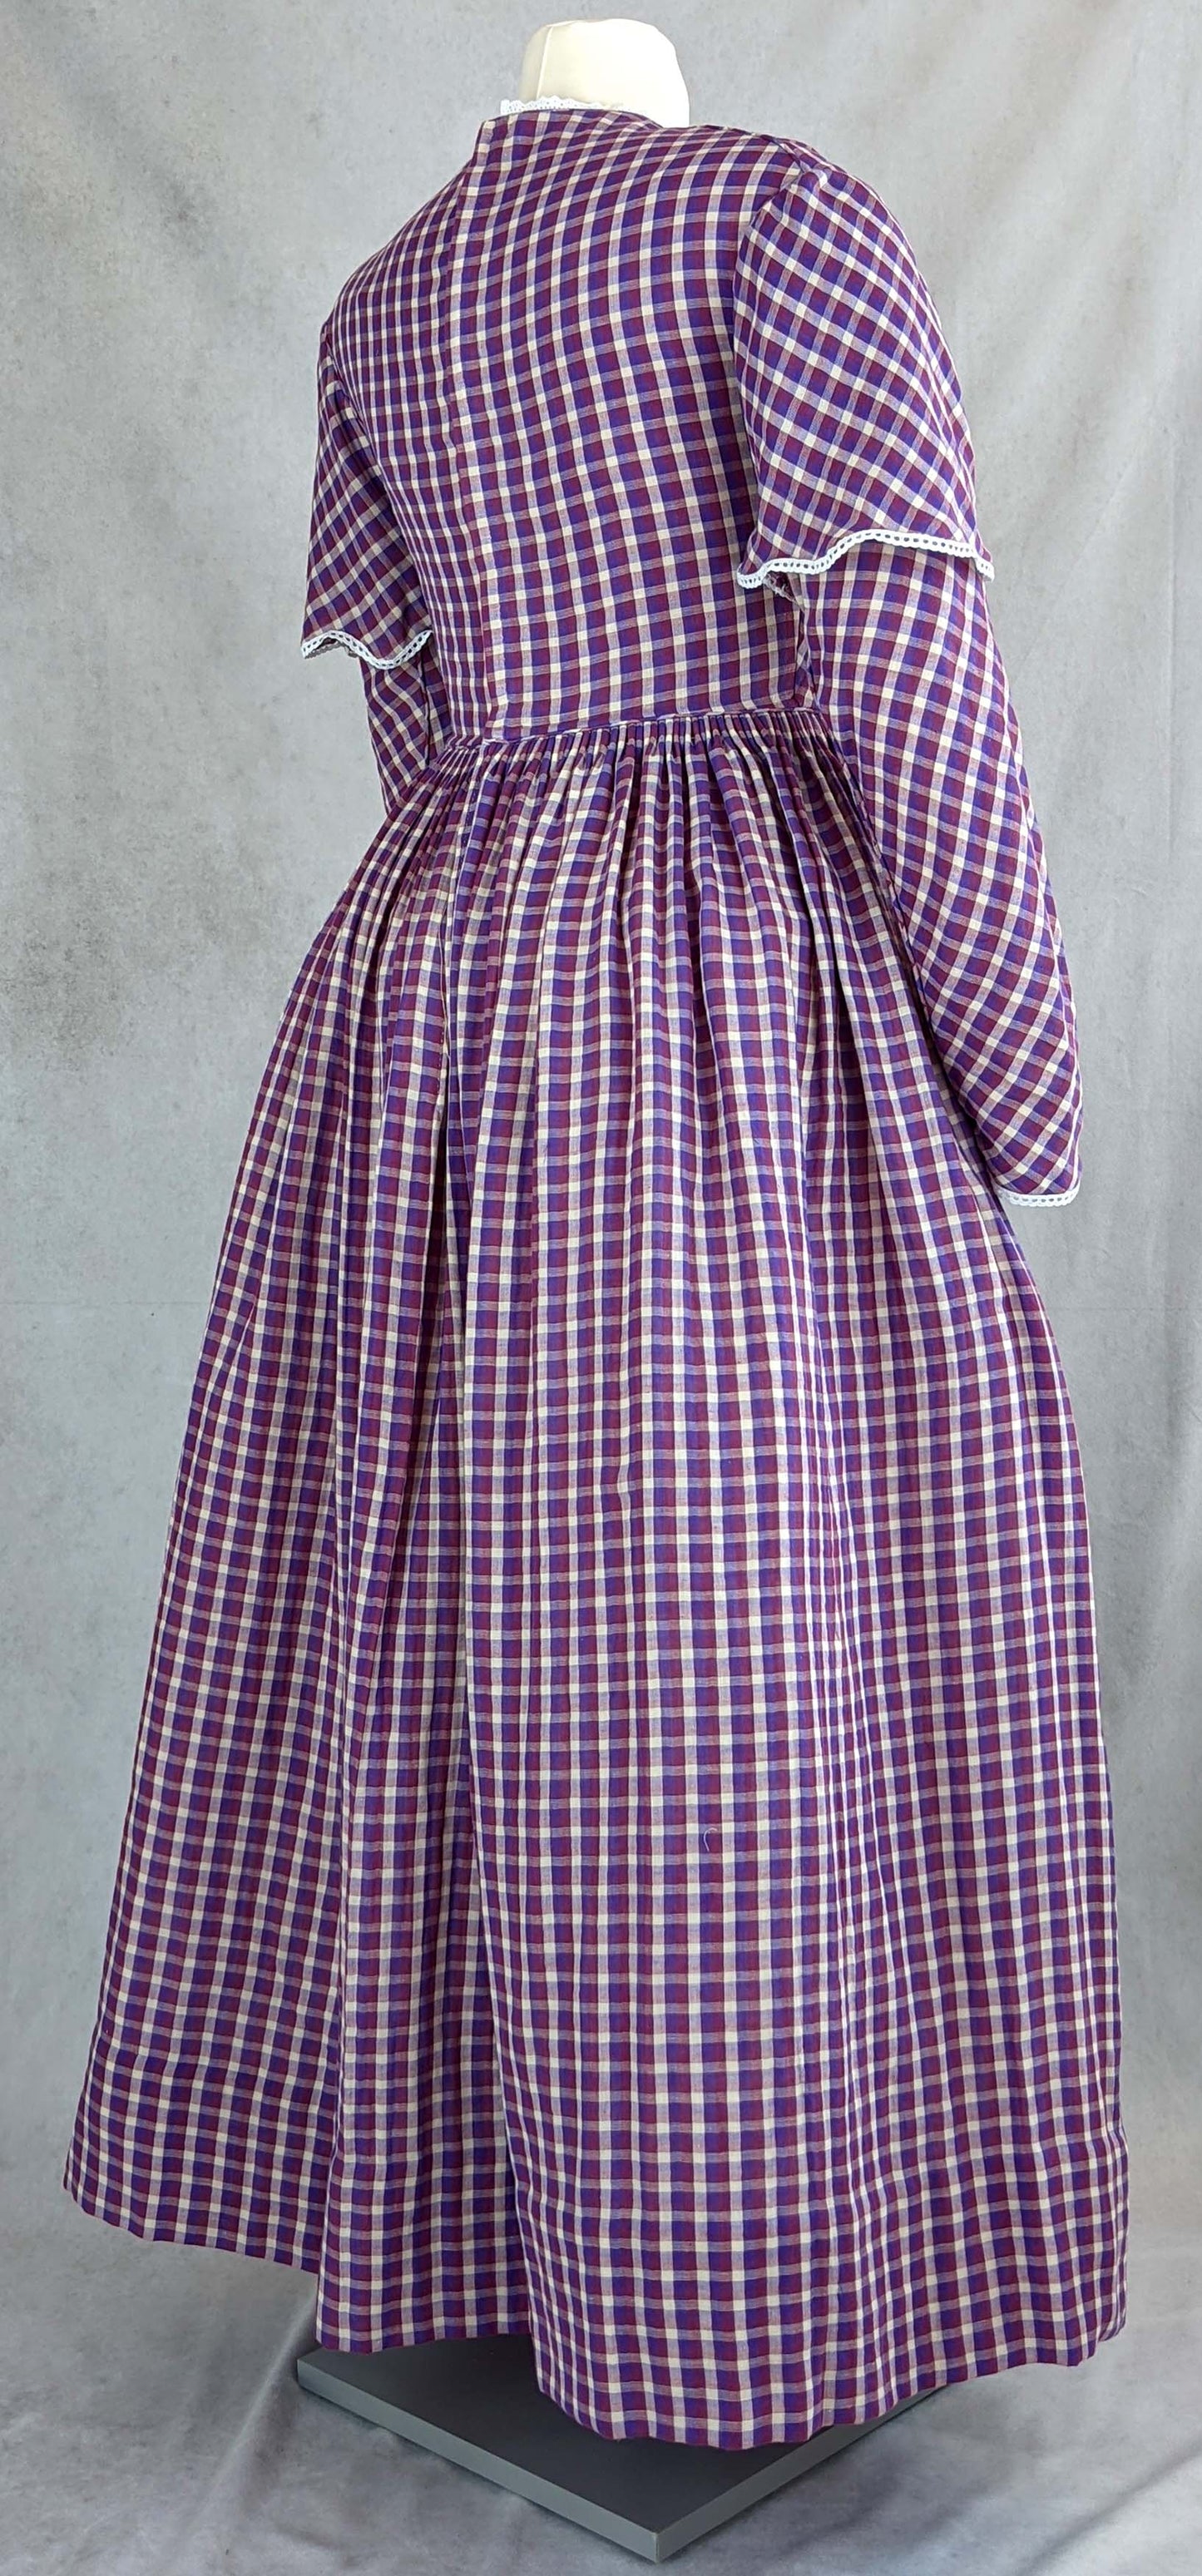 #0421 Day Dress 1840-45 Sewing Pattern Size US 8-30 (EU 34-56) Printed Pattern